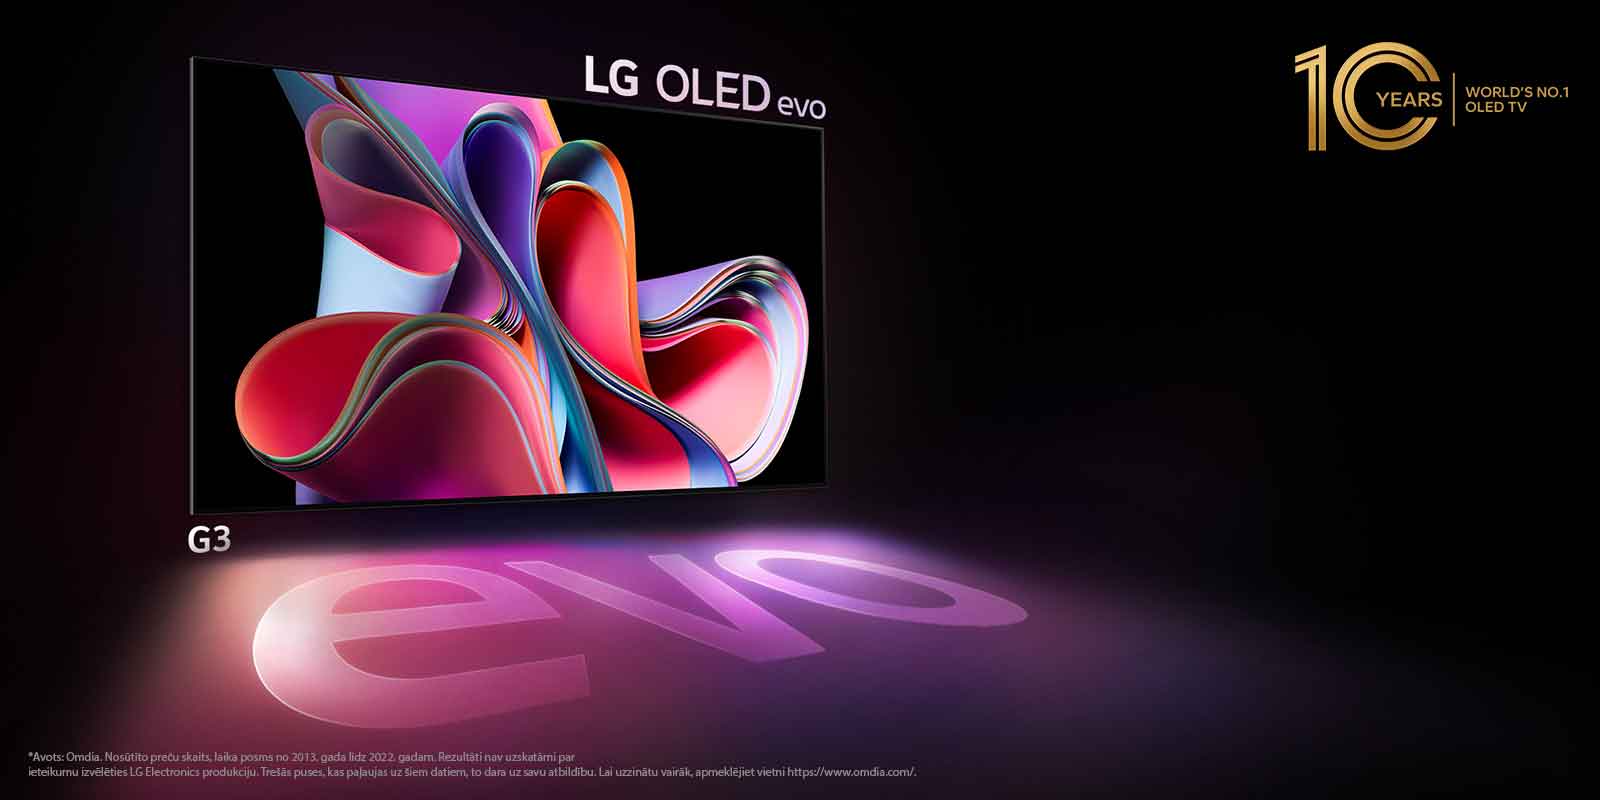 LG OLED G3 attēls uz melna fona, kurā redzams spilgti rozā un purpursarkans abstrakts mākslas darbs. Displejs met krāsainu ēnu, kurā ir redzams vārds «evo». Attēla augšējā kreisajā stūrī ir redzama emblēma «10 Years World's No.1 OLED TV». 